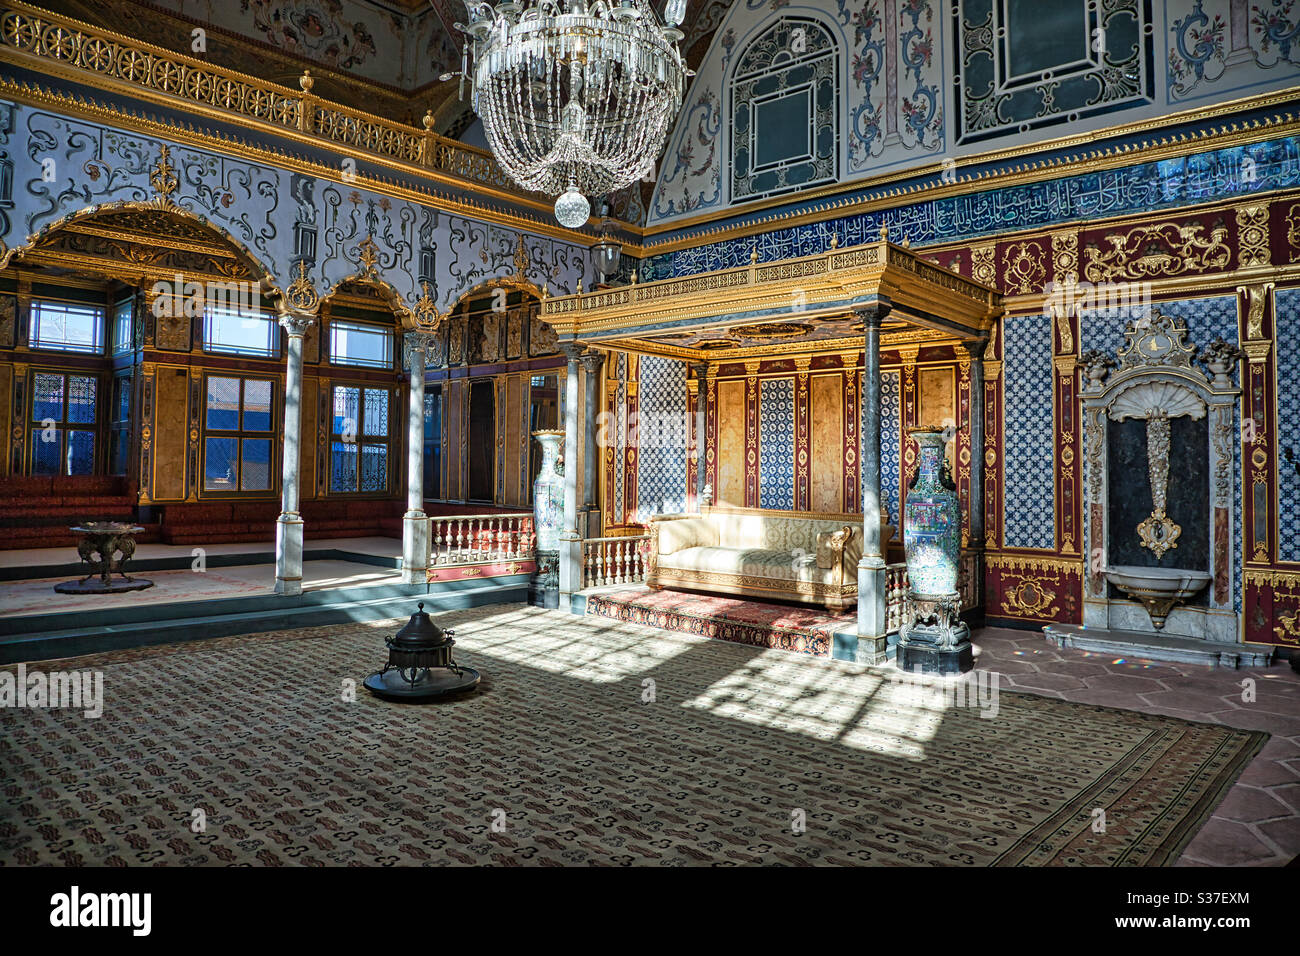 Der Harem im Topkapi Palast, Istanbul, Türkei. Der Palast war der offizielle Wohnsitz der osmanischen Sultane. Der Harem bestand aus Wohnungen, in denen die Sultane mit ihren Familien lebten. Stockfoto